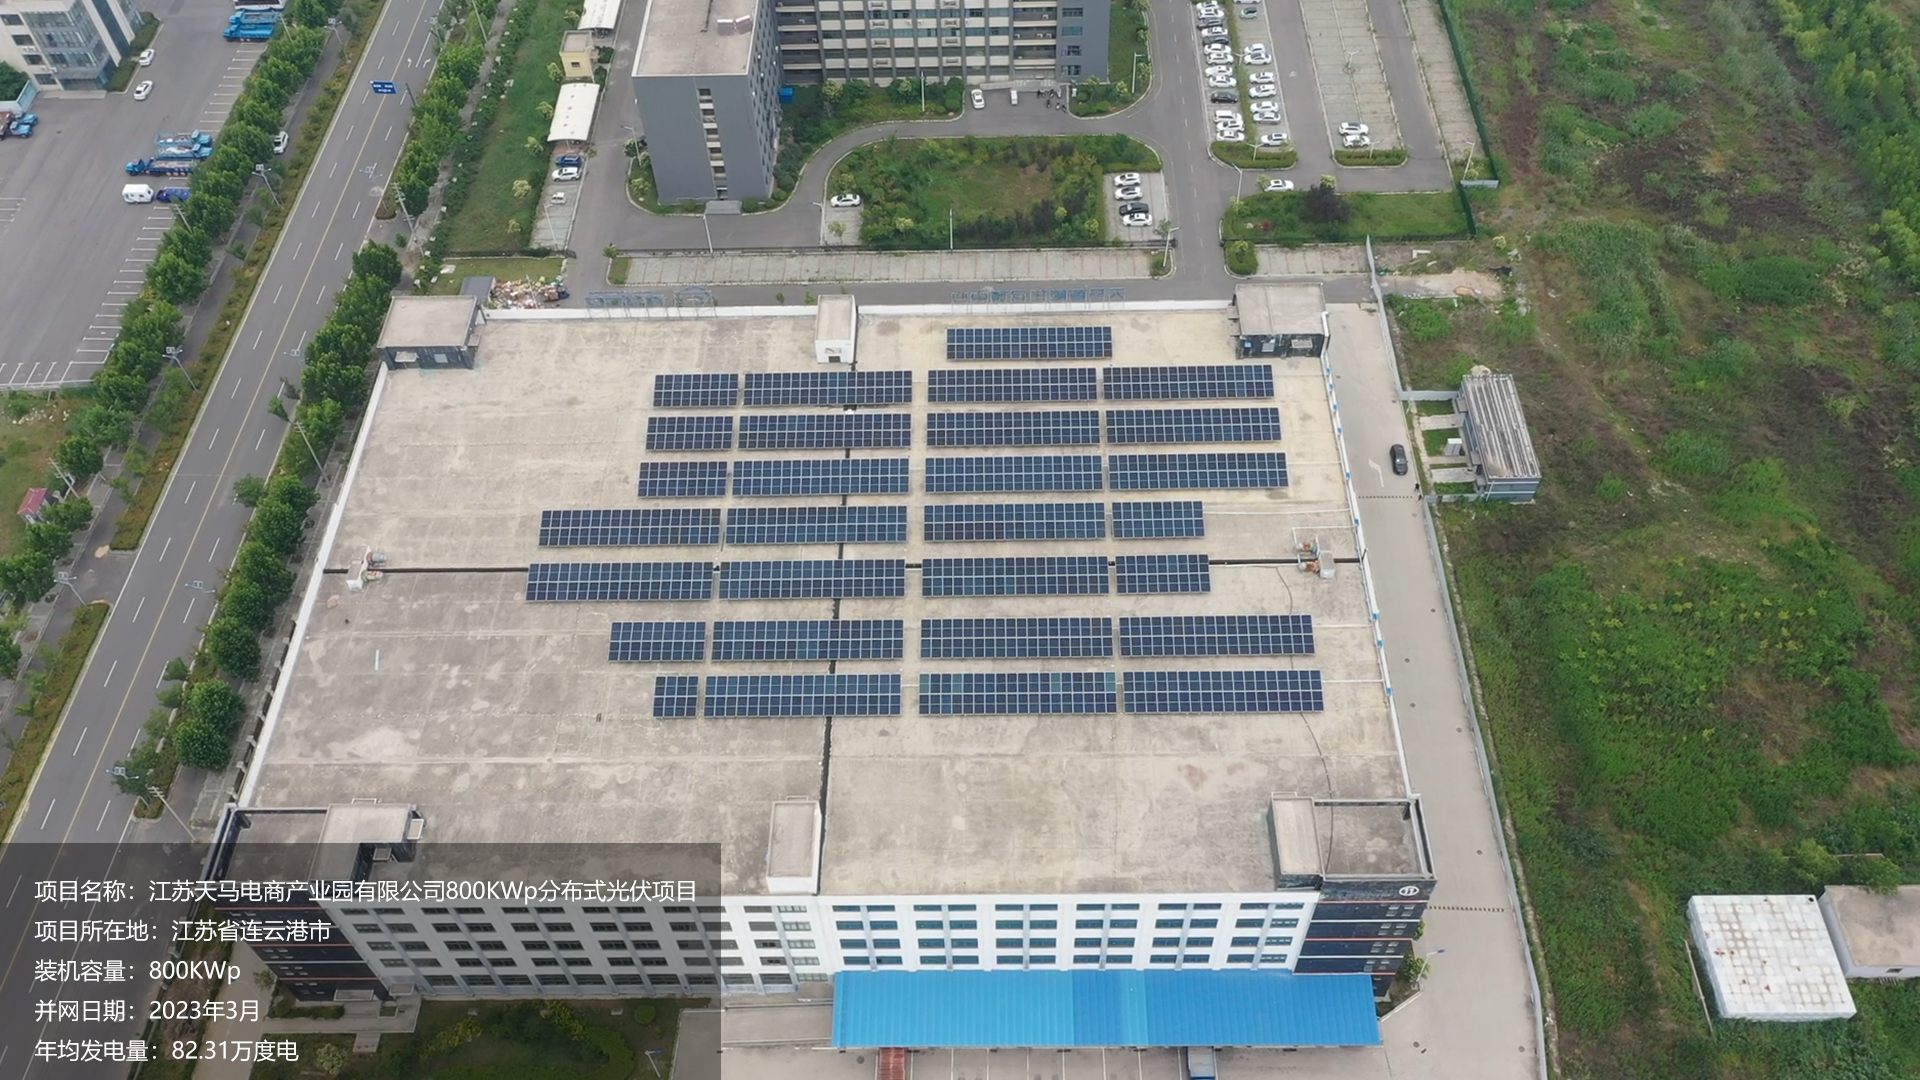 天马电商产业园项目总装机容量800KW，项目位于江苏省连云港市，于2023年3月并网发电，年均发电量约85万度。